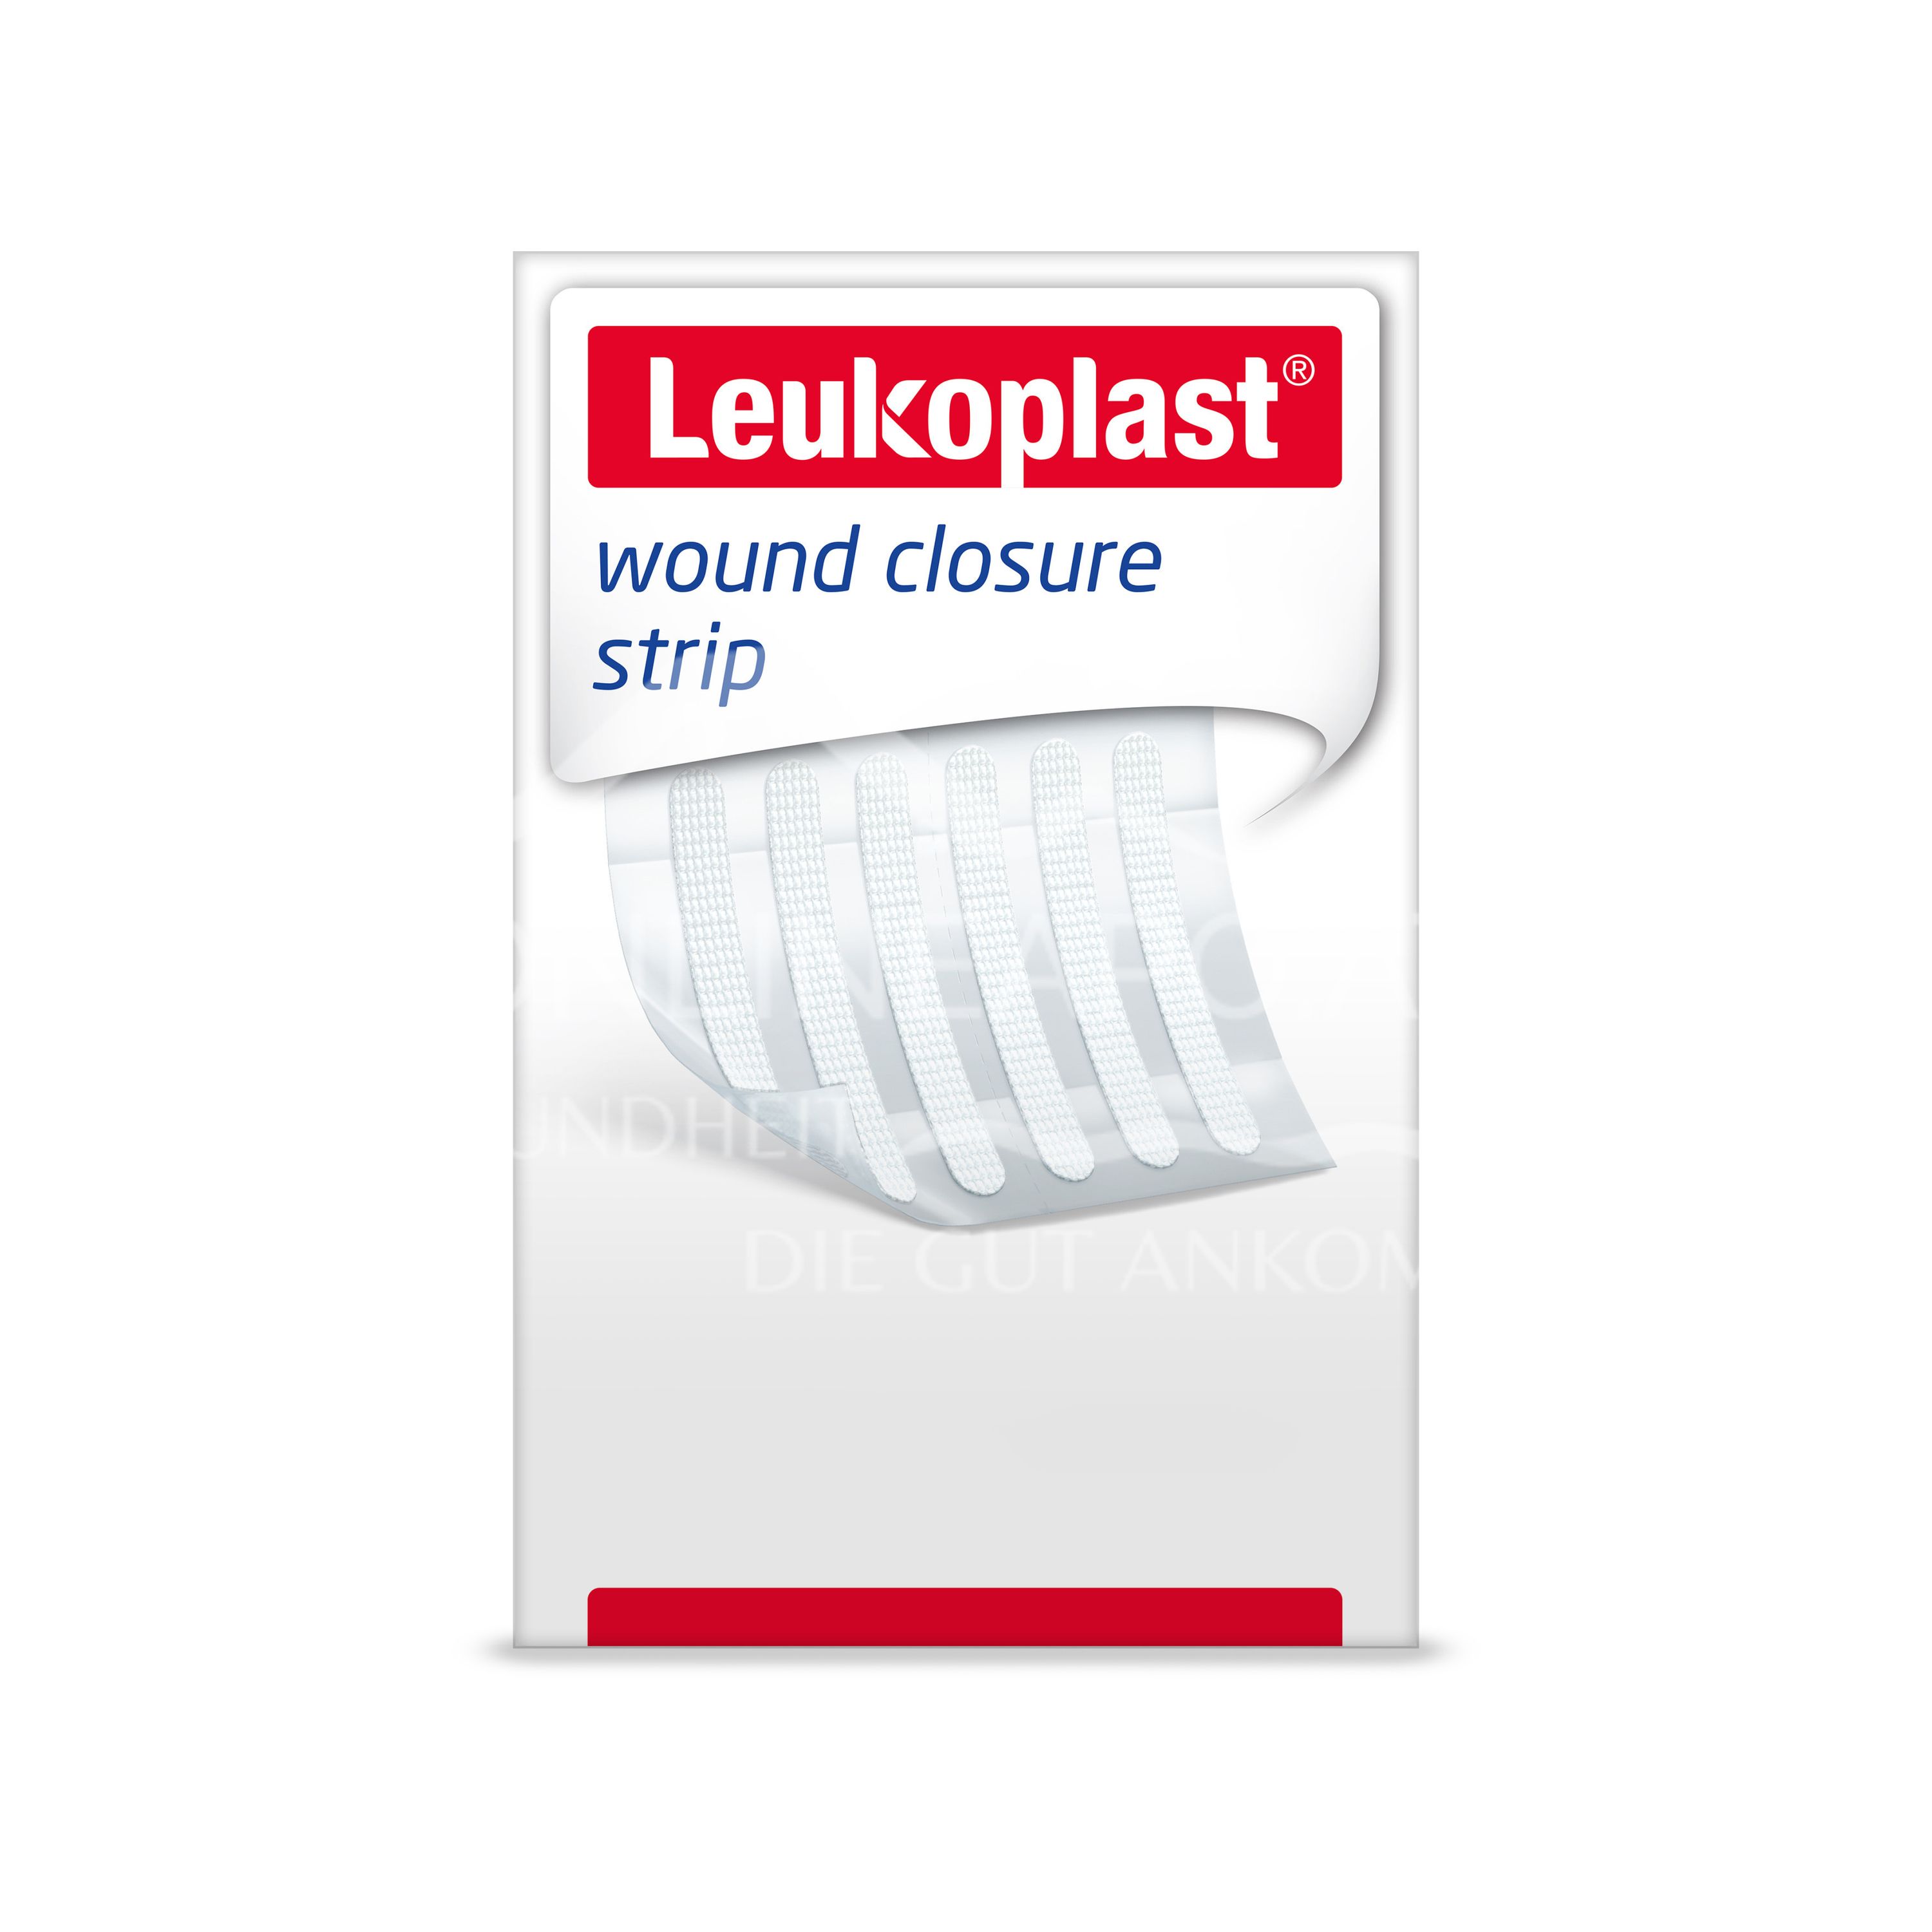 Leukoplast wound closure strip 6 x 75mm